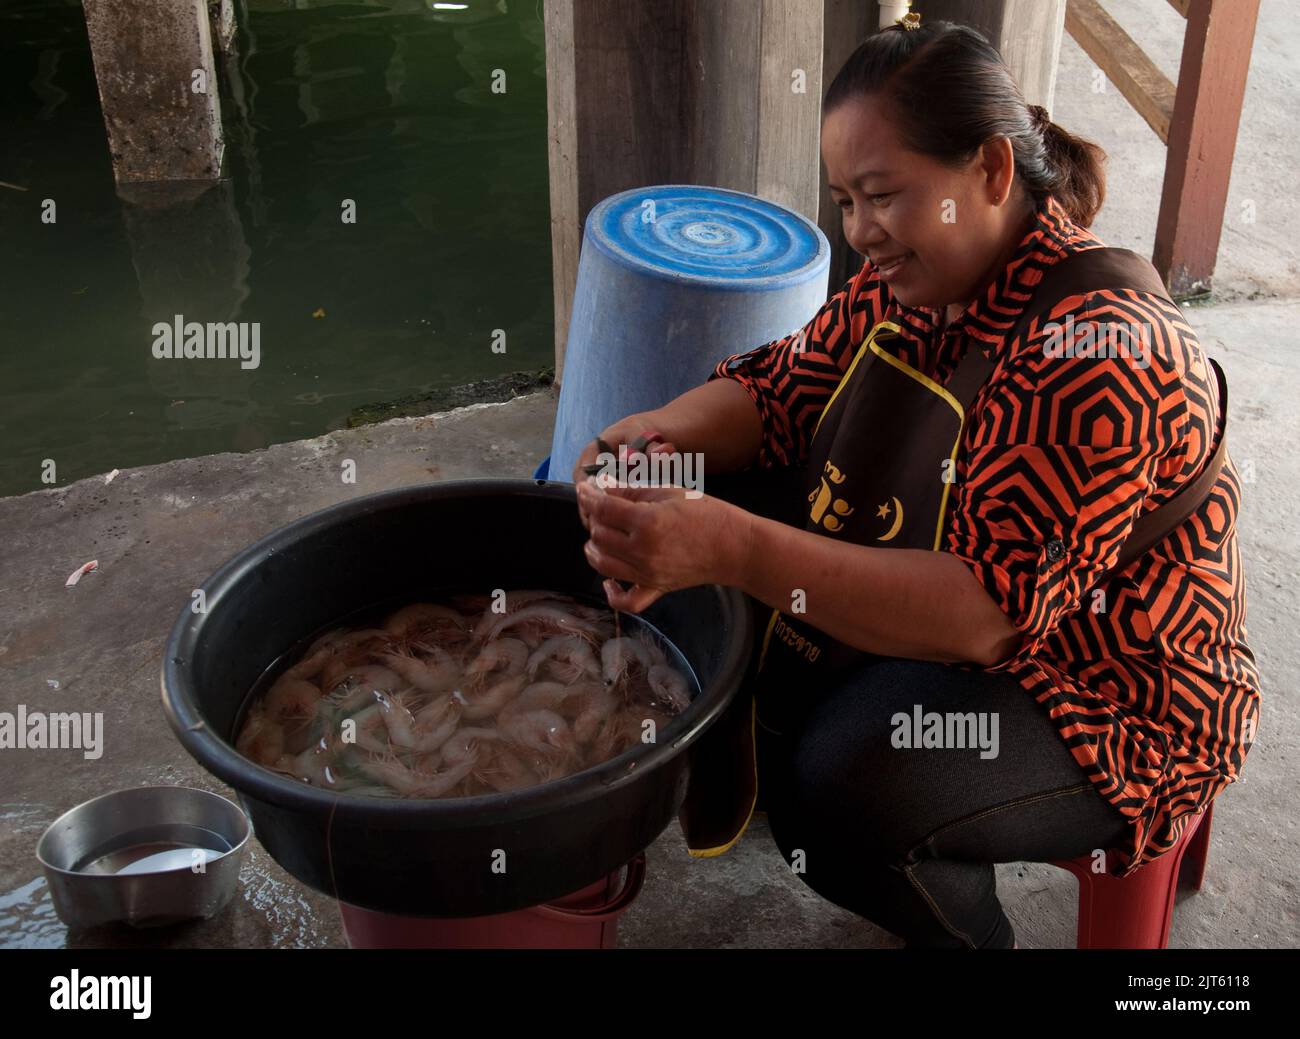 Femme préparant des crevettes, restaurant, jetée de Tan, George Town, Penang, Malaisie, Asie. Tan Jetty est l'une des plus anciennes colonies de Penang et la plupart d'entre elles Banque D'Images